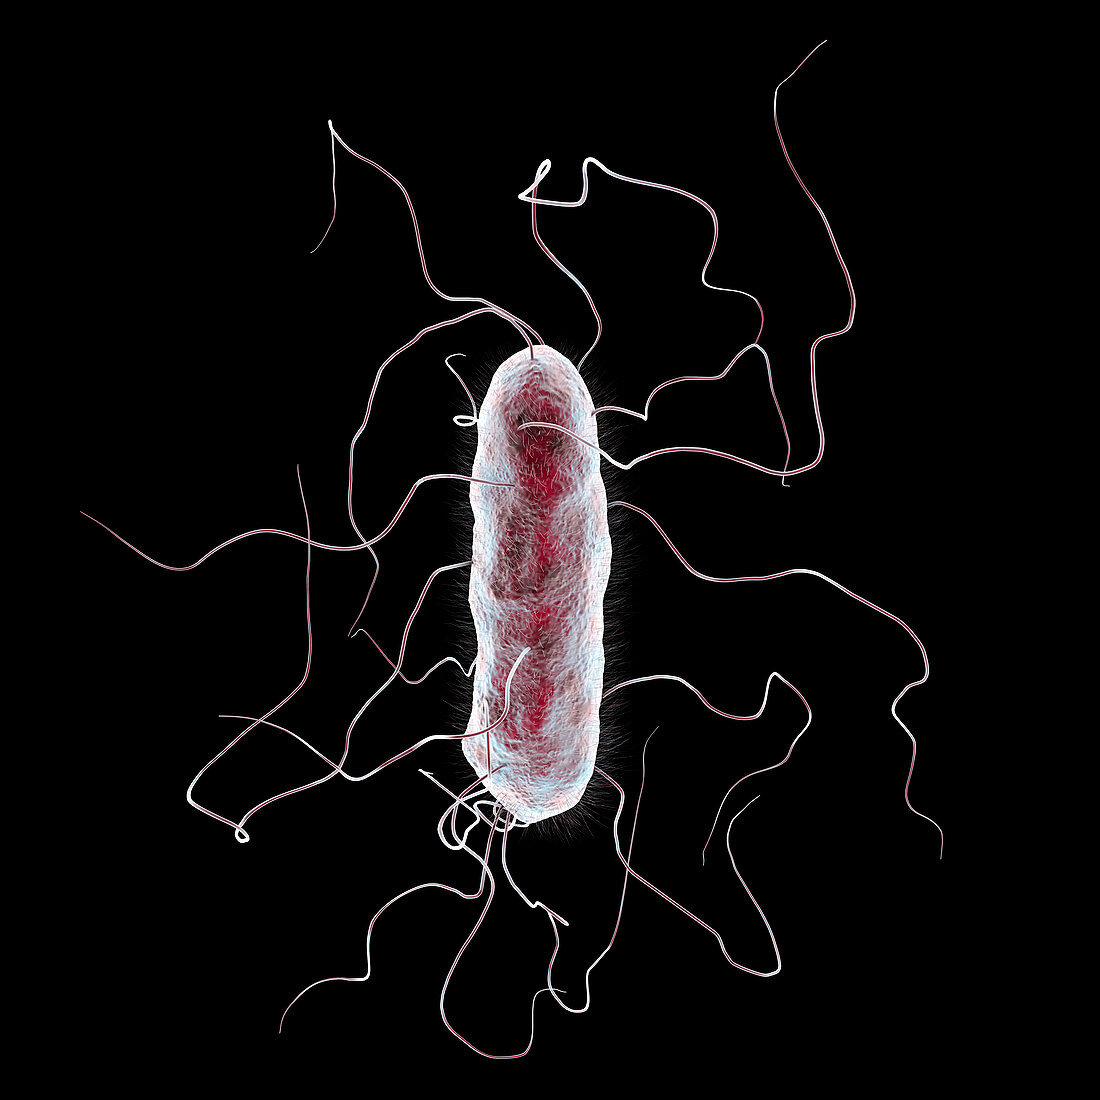 Proteus mirabilis bacterium, illustration